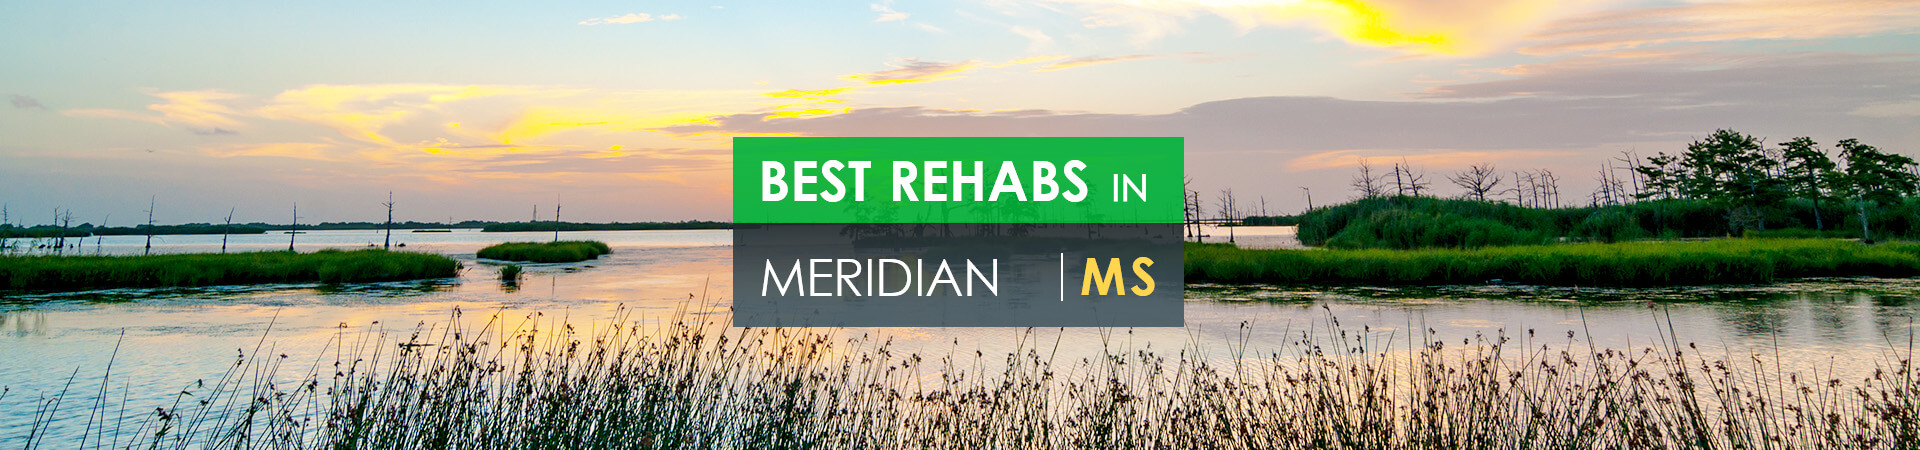 Best rehabs in Meridian, MS